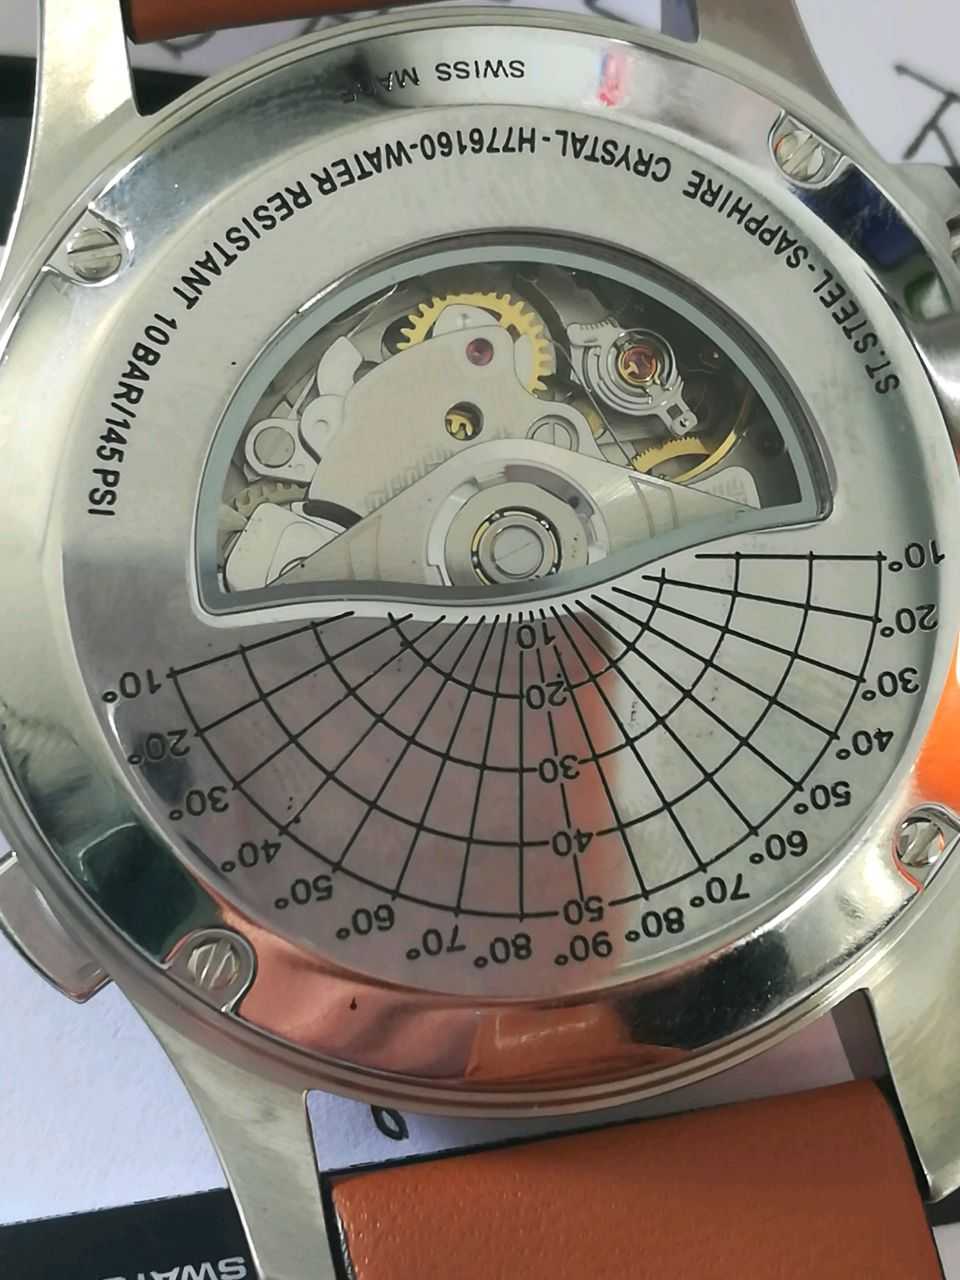 汉米尔顿H77616533手表【表友晒单作业】很不错的表...